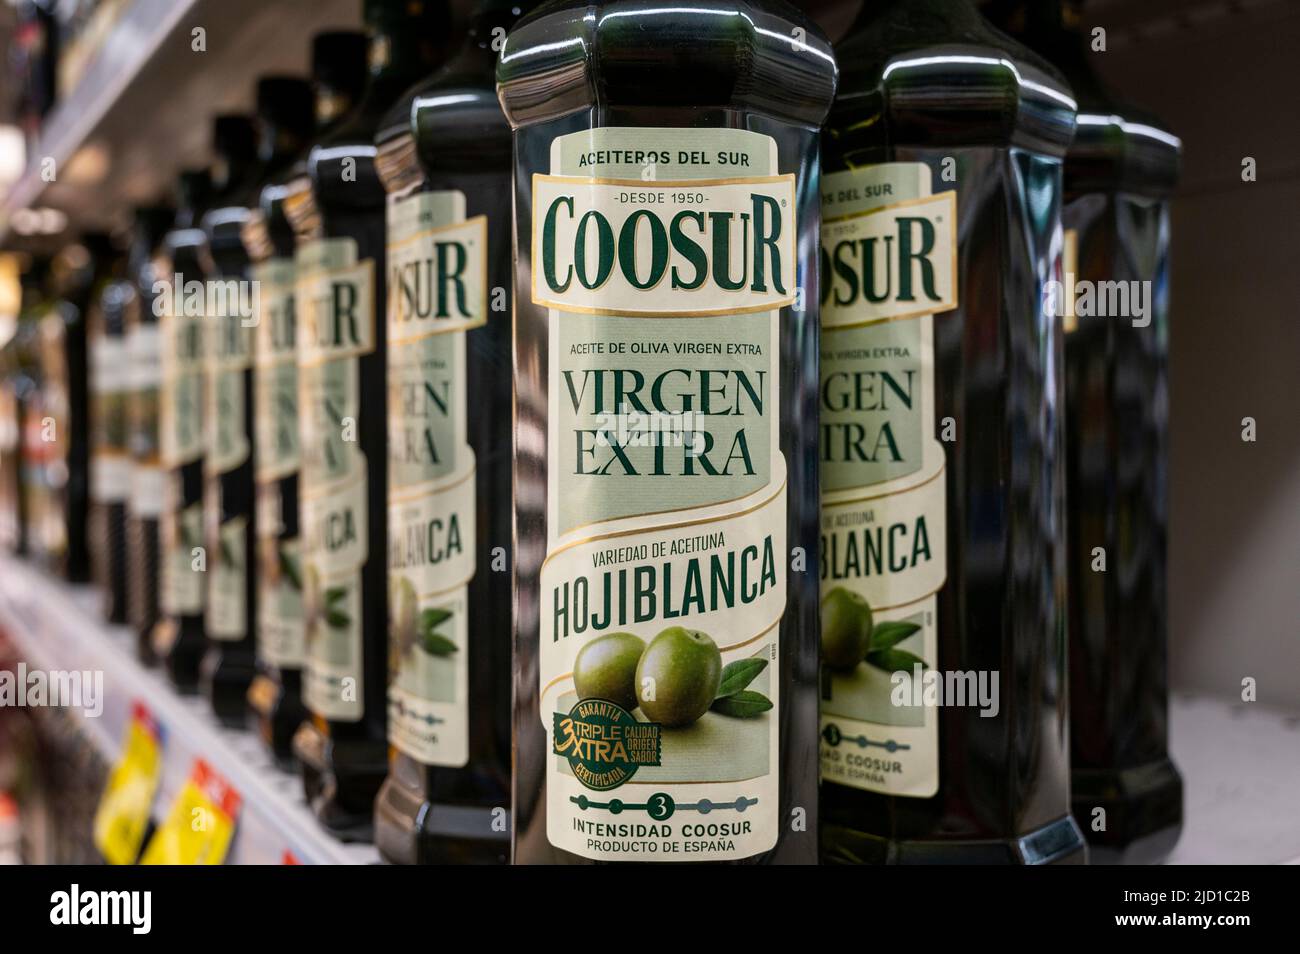 spanisches einem Supermarkt Alamy Spanien Flasche extra-Virgin - in zum Olivenöl Stockfotografie Marke in Verkauf Carrefour Coosur gesehen